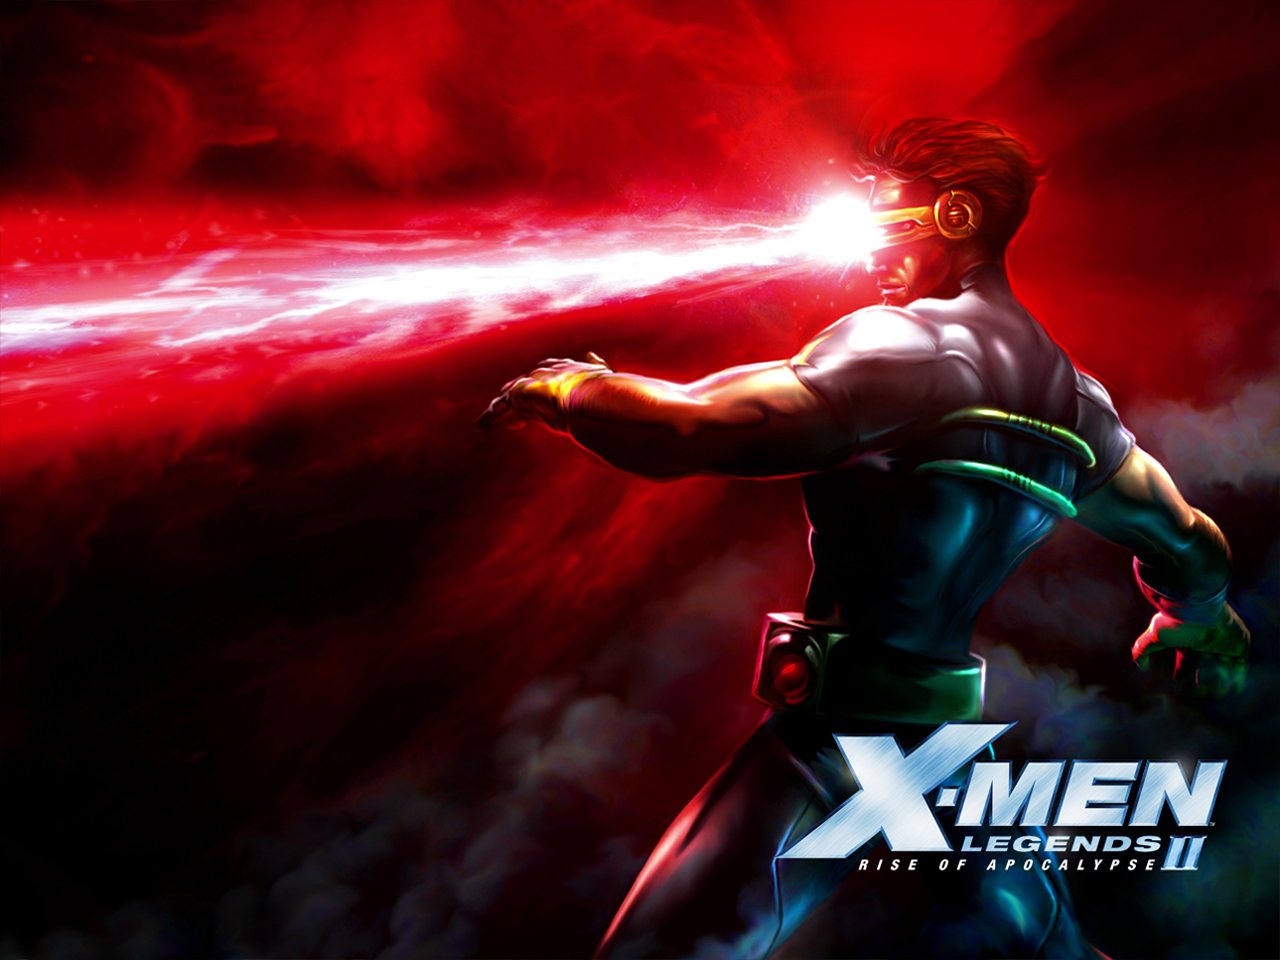 Melhores papéis de parede de X Men Legends Ii: Rise Of Apocalypse para tela do telefone